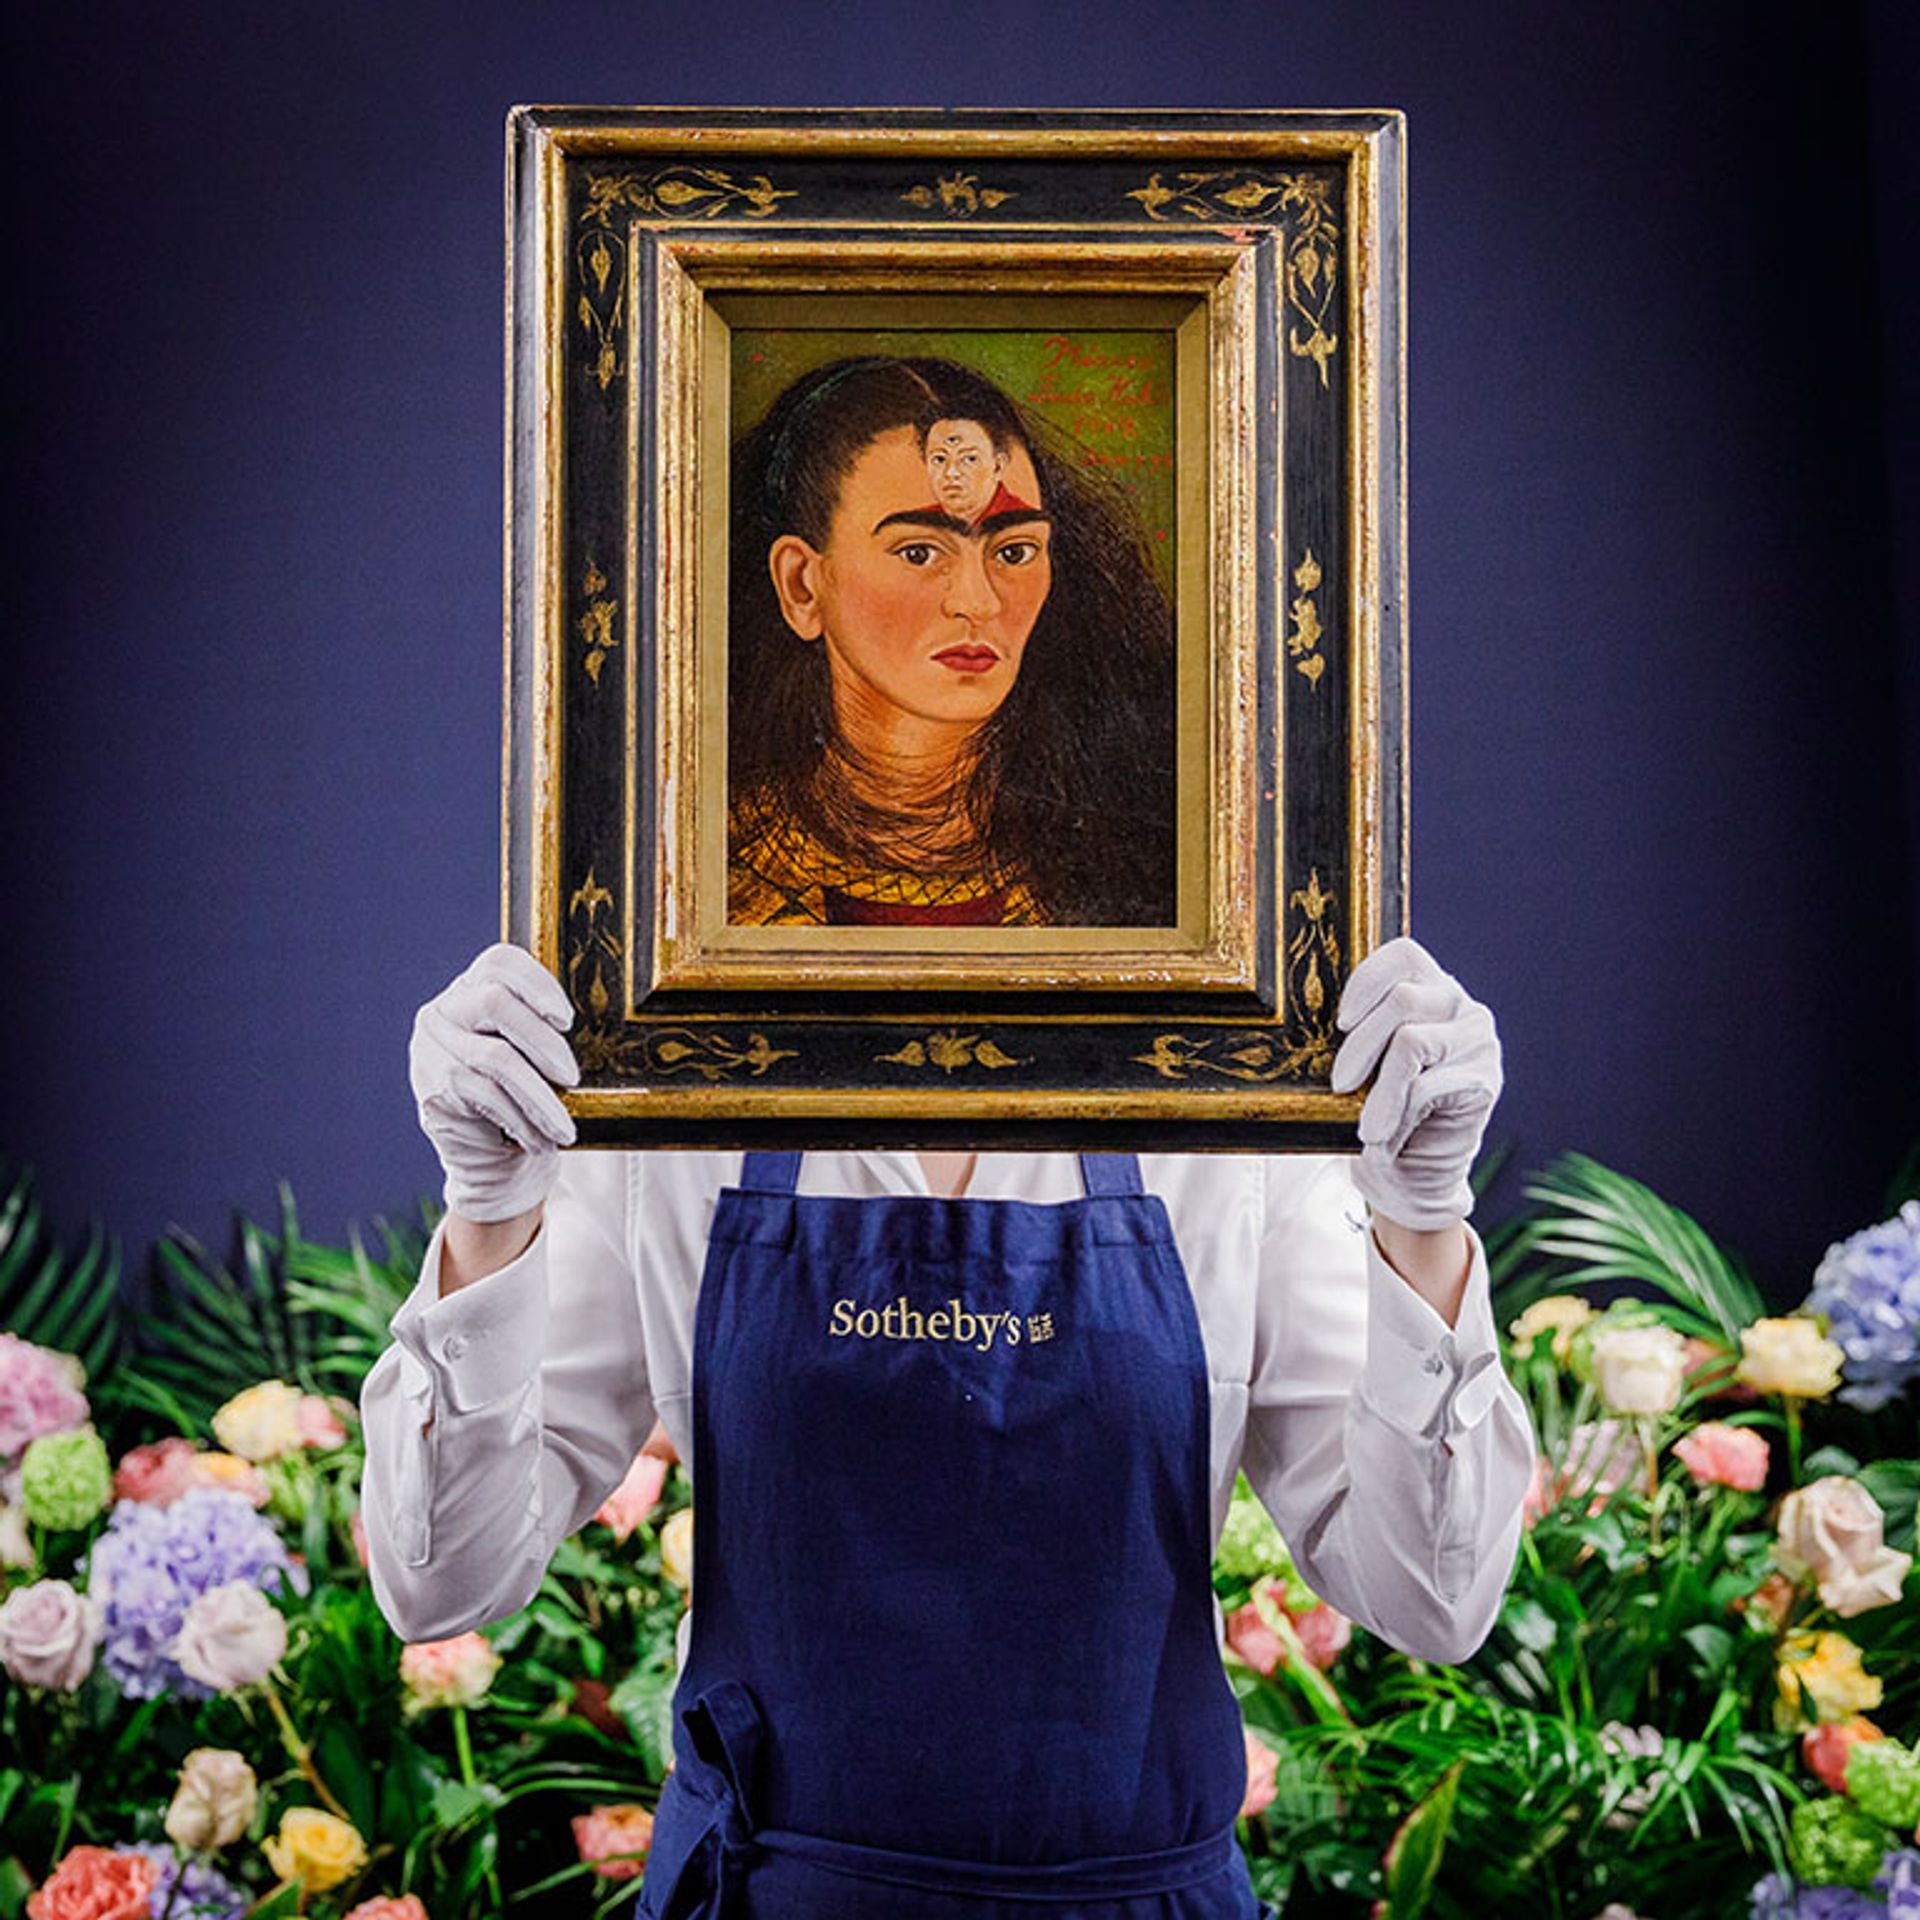 פרידה קאלו – דייגו יו (1949) אמורה להימכר במכירה פומבית בניו יורק ב-16 בנובמבר

תמונה מאת Tristan Fewings/Getty Images עבור Sotheby's